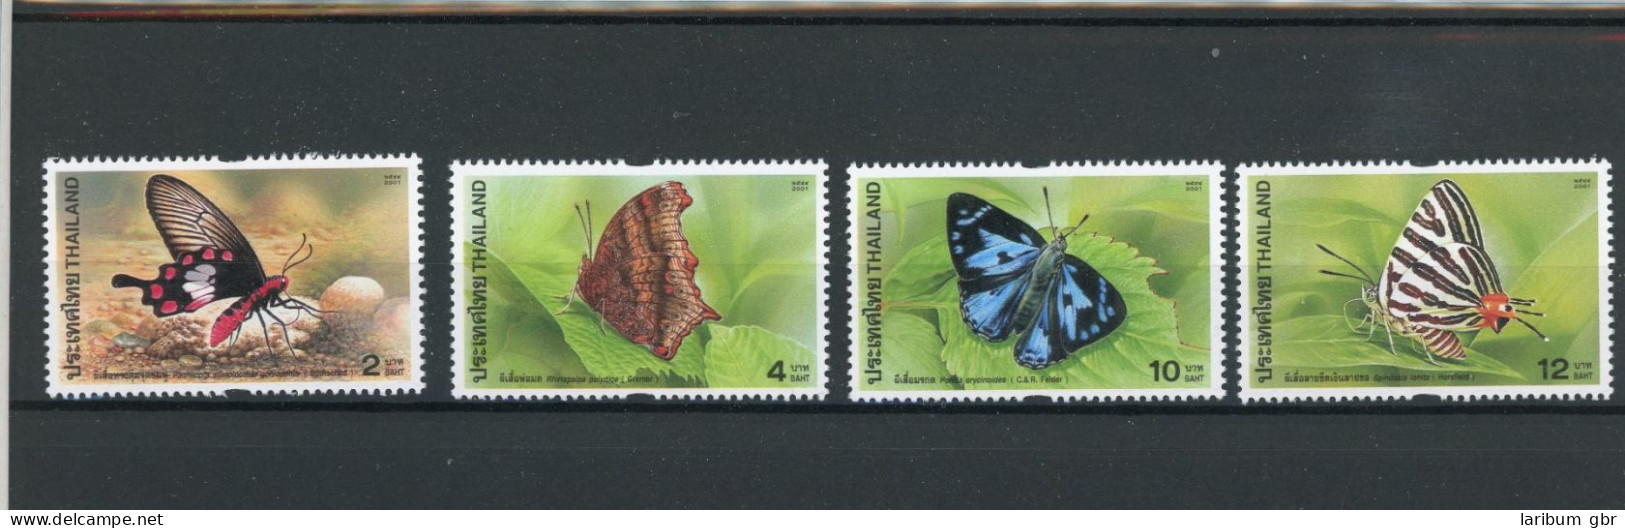 Thailand 2101-2104, M-Heft 2101, Block Postfrisch Schmetterling #JT760 - Thaïlande